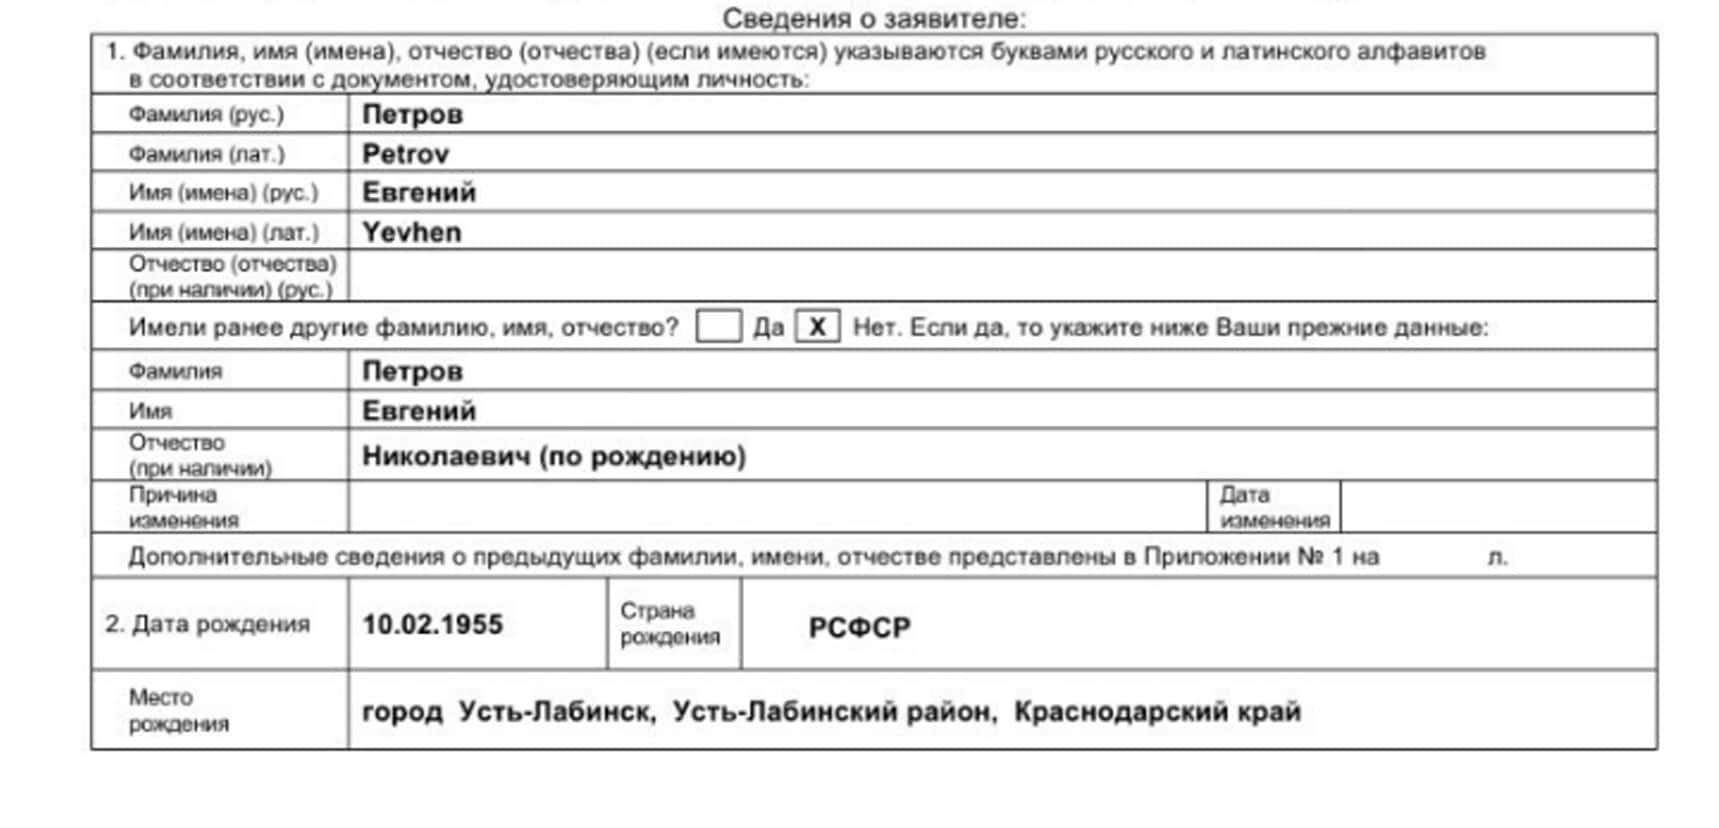 Вид на жительство (внж) в болгарии для россиян 2021